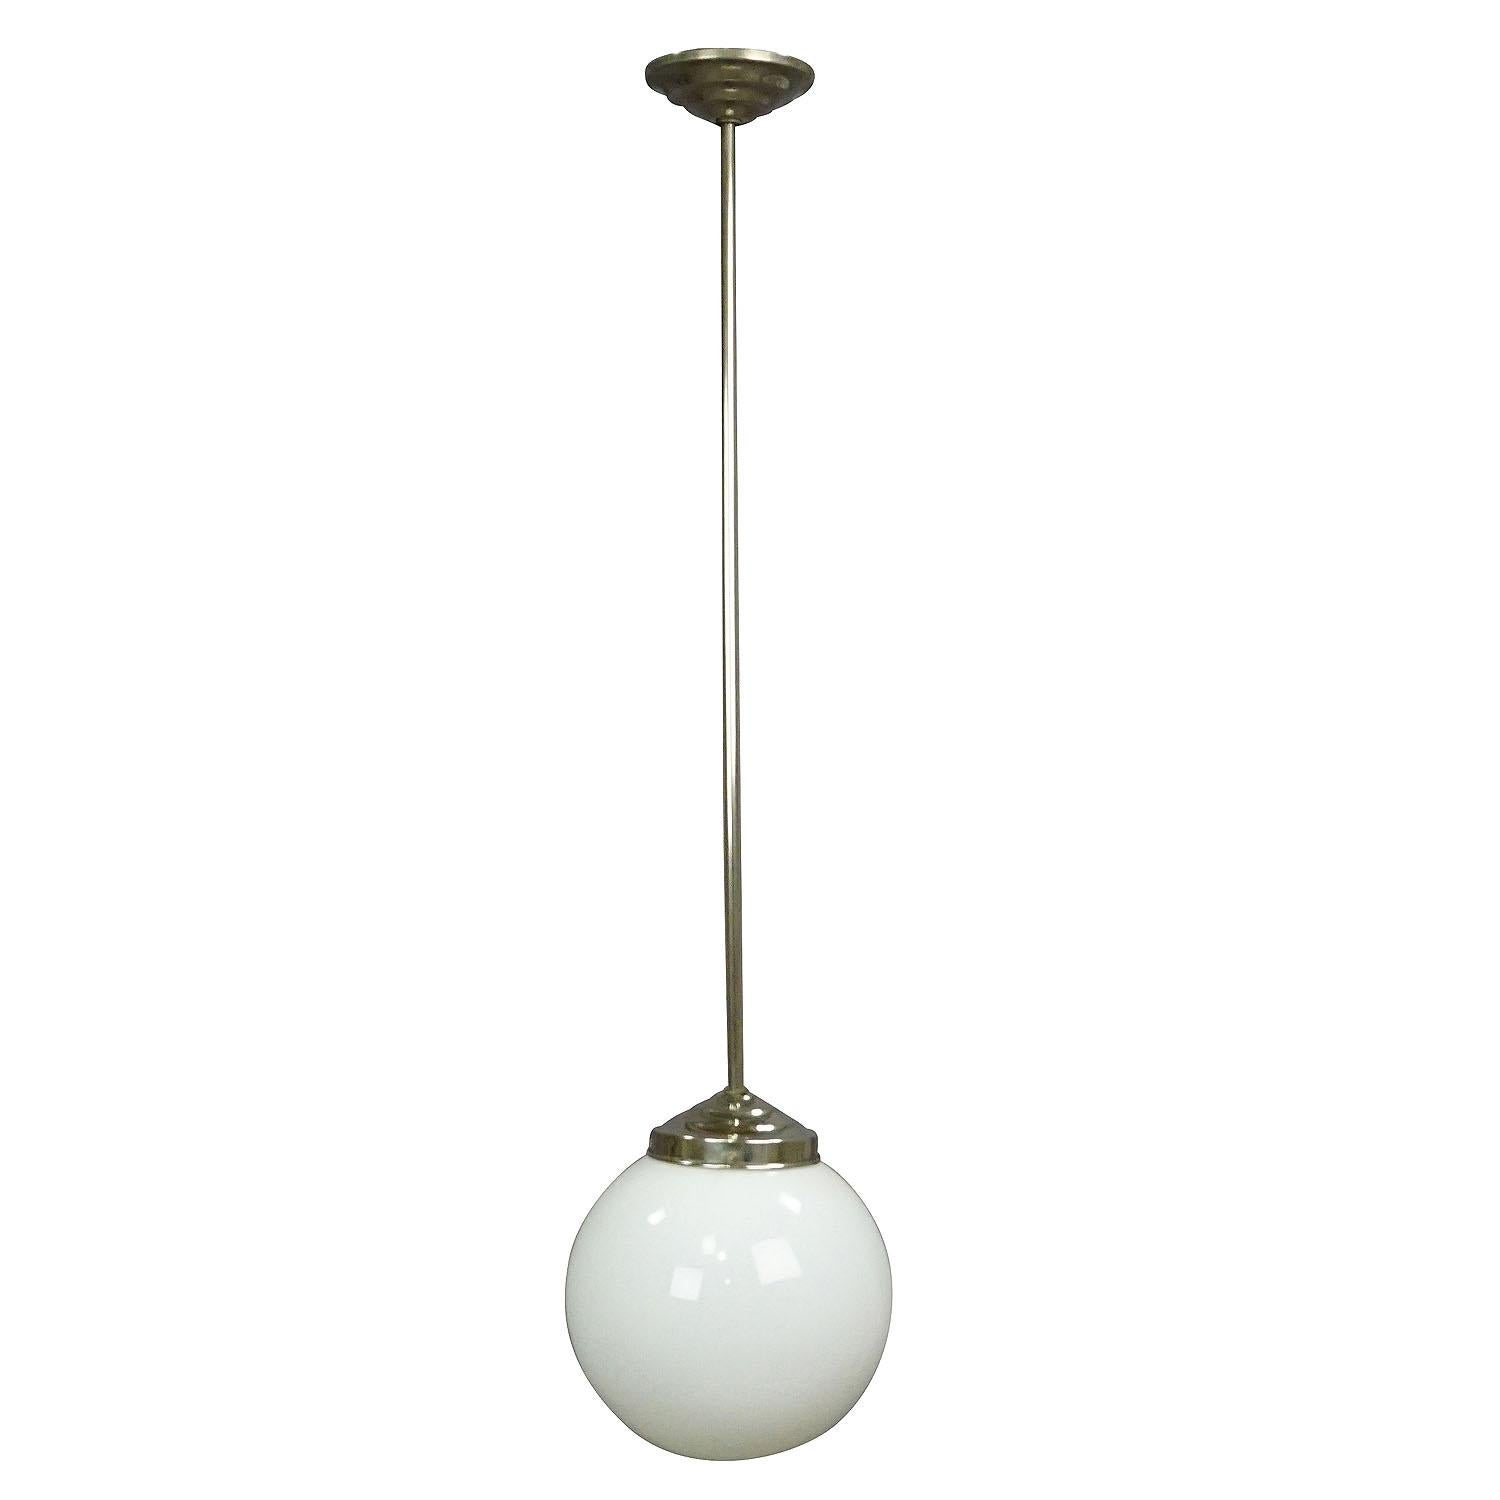 Lampe suspendue ancienne de style Bauhaus avec un abat-jour en verre opalin blanc et une armature en métal chromé. Câblage renouvelé, en état de marche. Avec douille de lampe à culot international E27.

Mesures : Hauteur 22.05